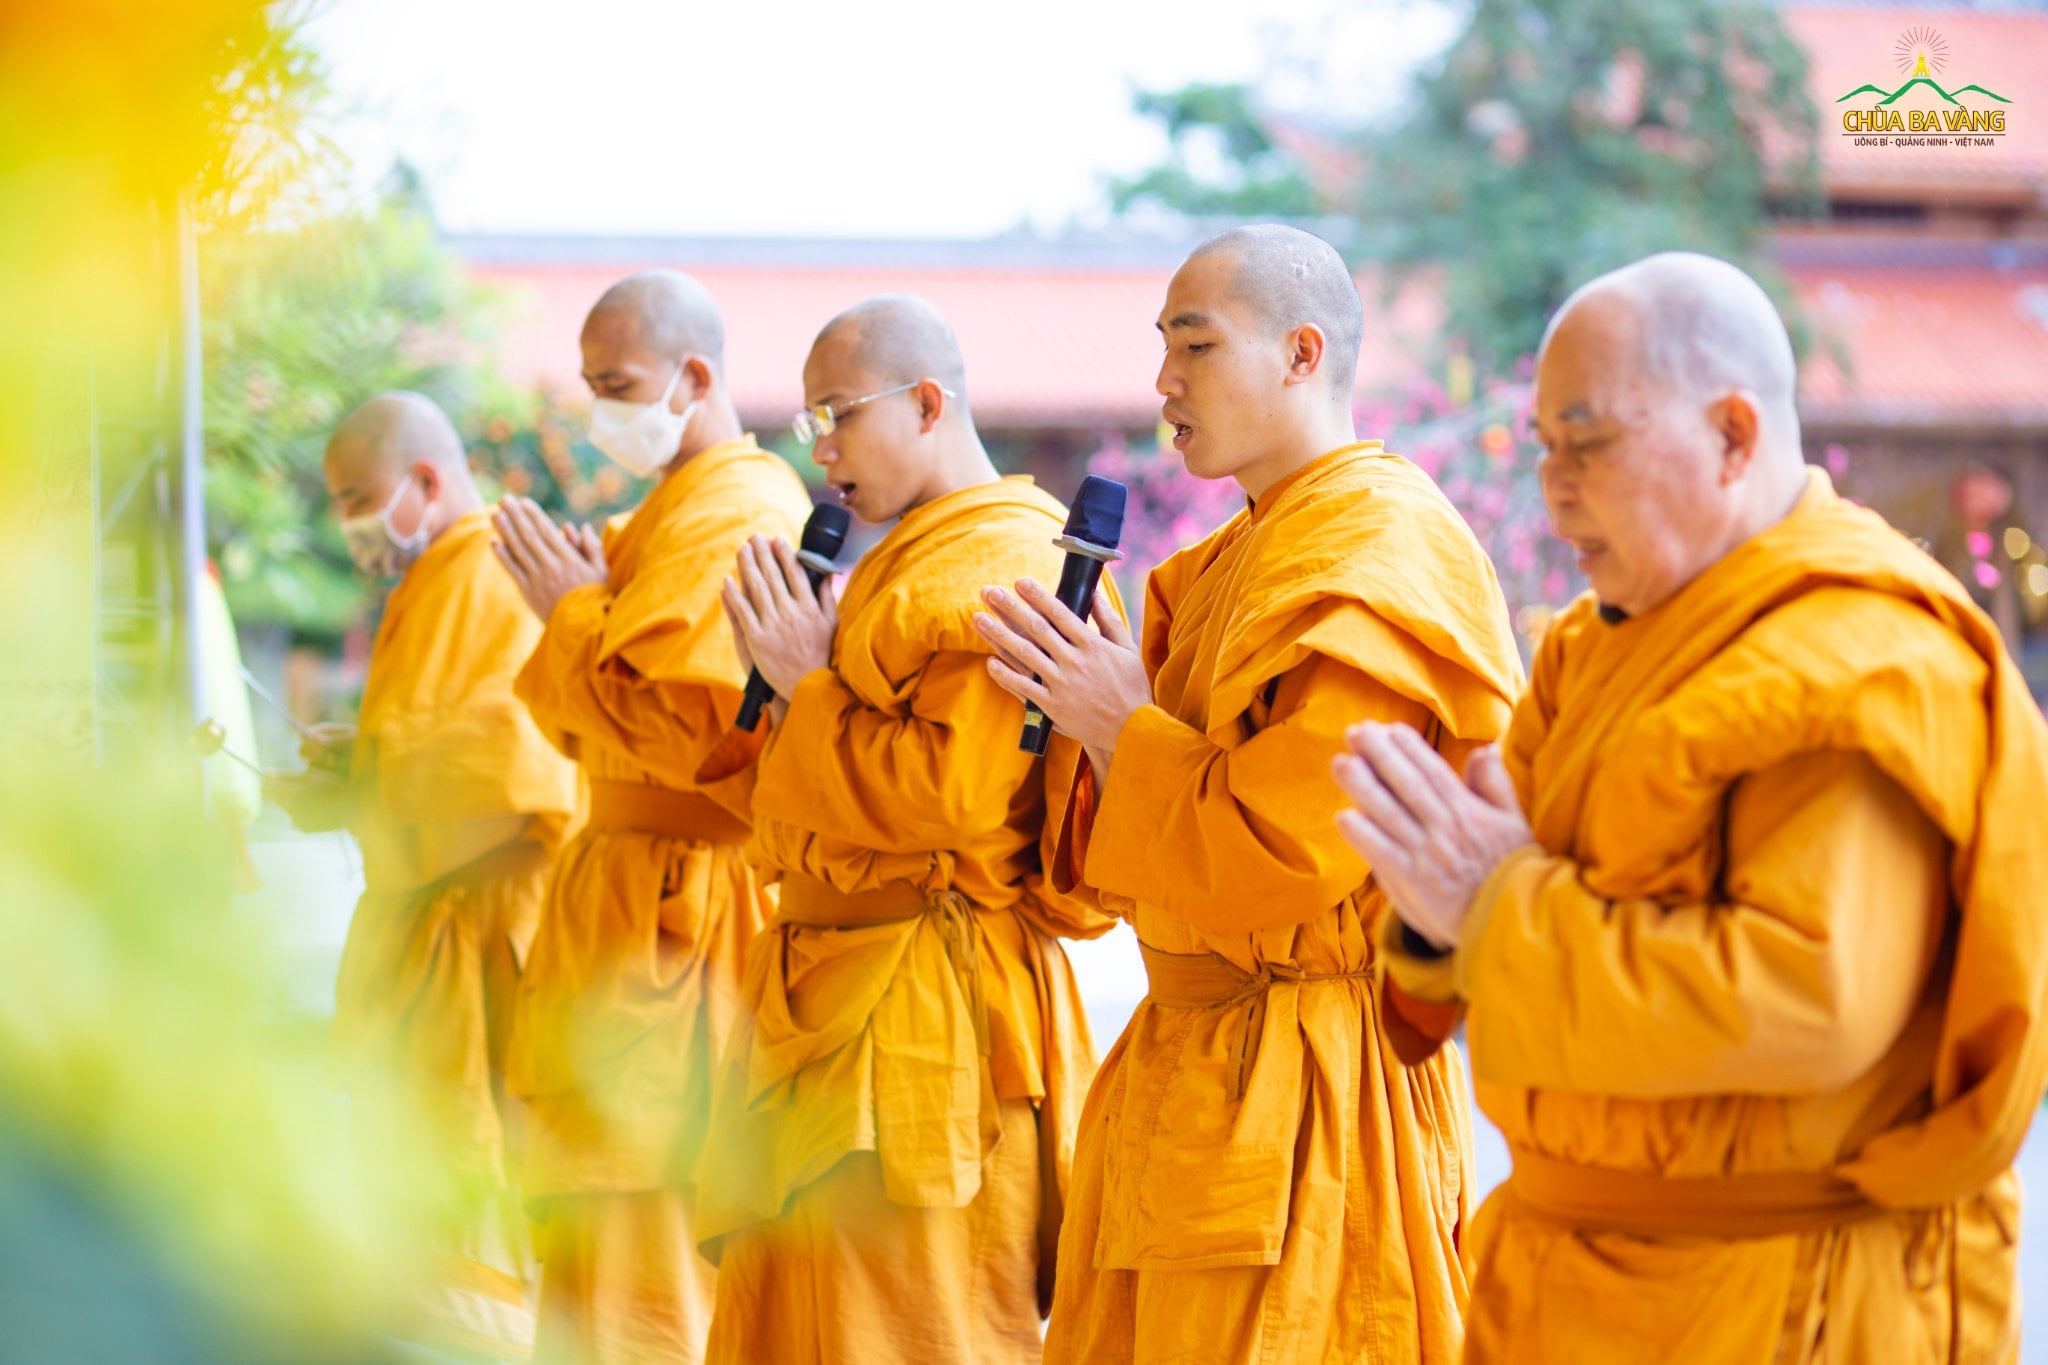 Hình ảnh chư Tăng chùa Ba Vàng tụng đọc kinh Dược Sư, cầu an cho Quốc gia, xã hội